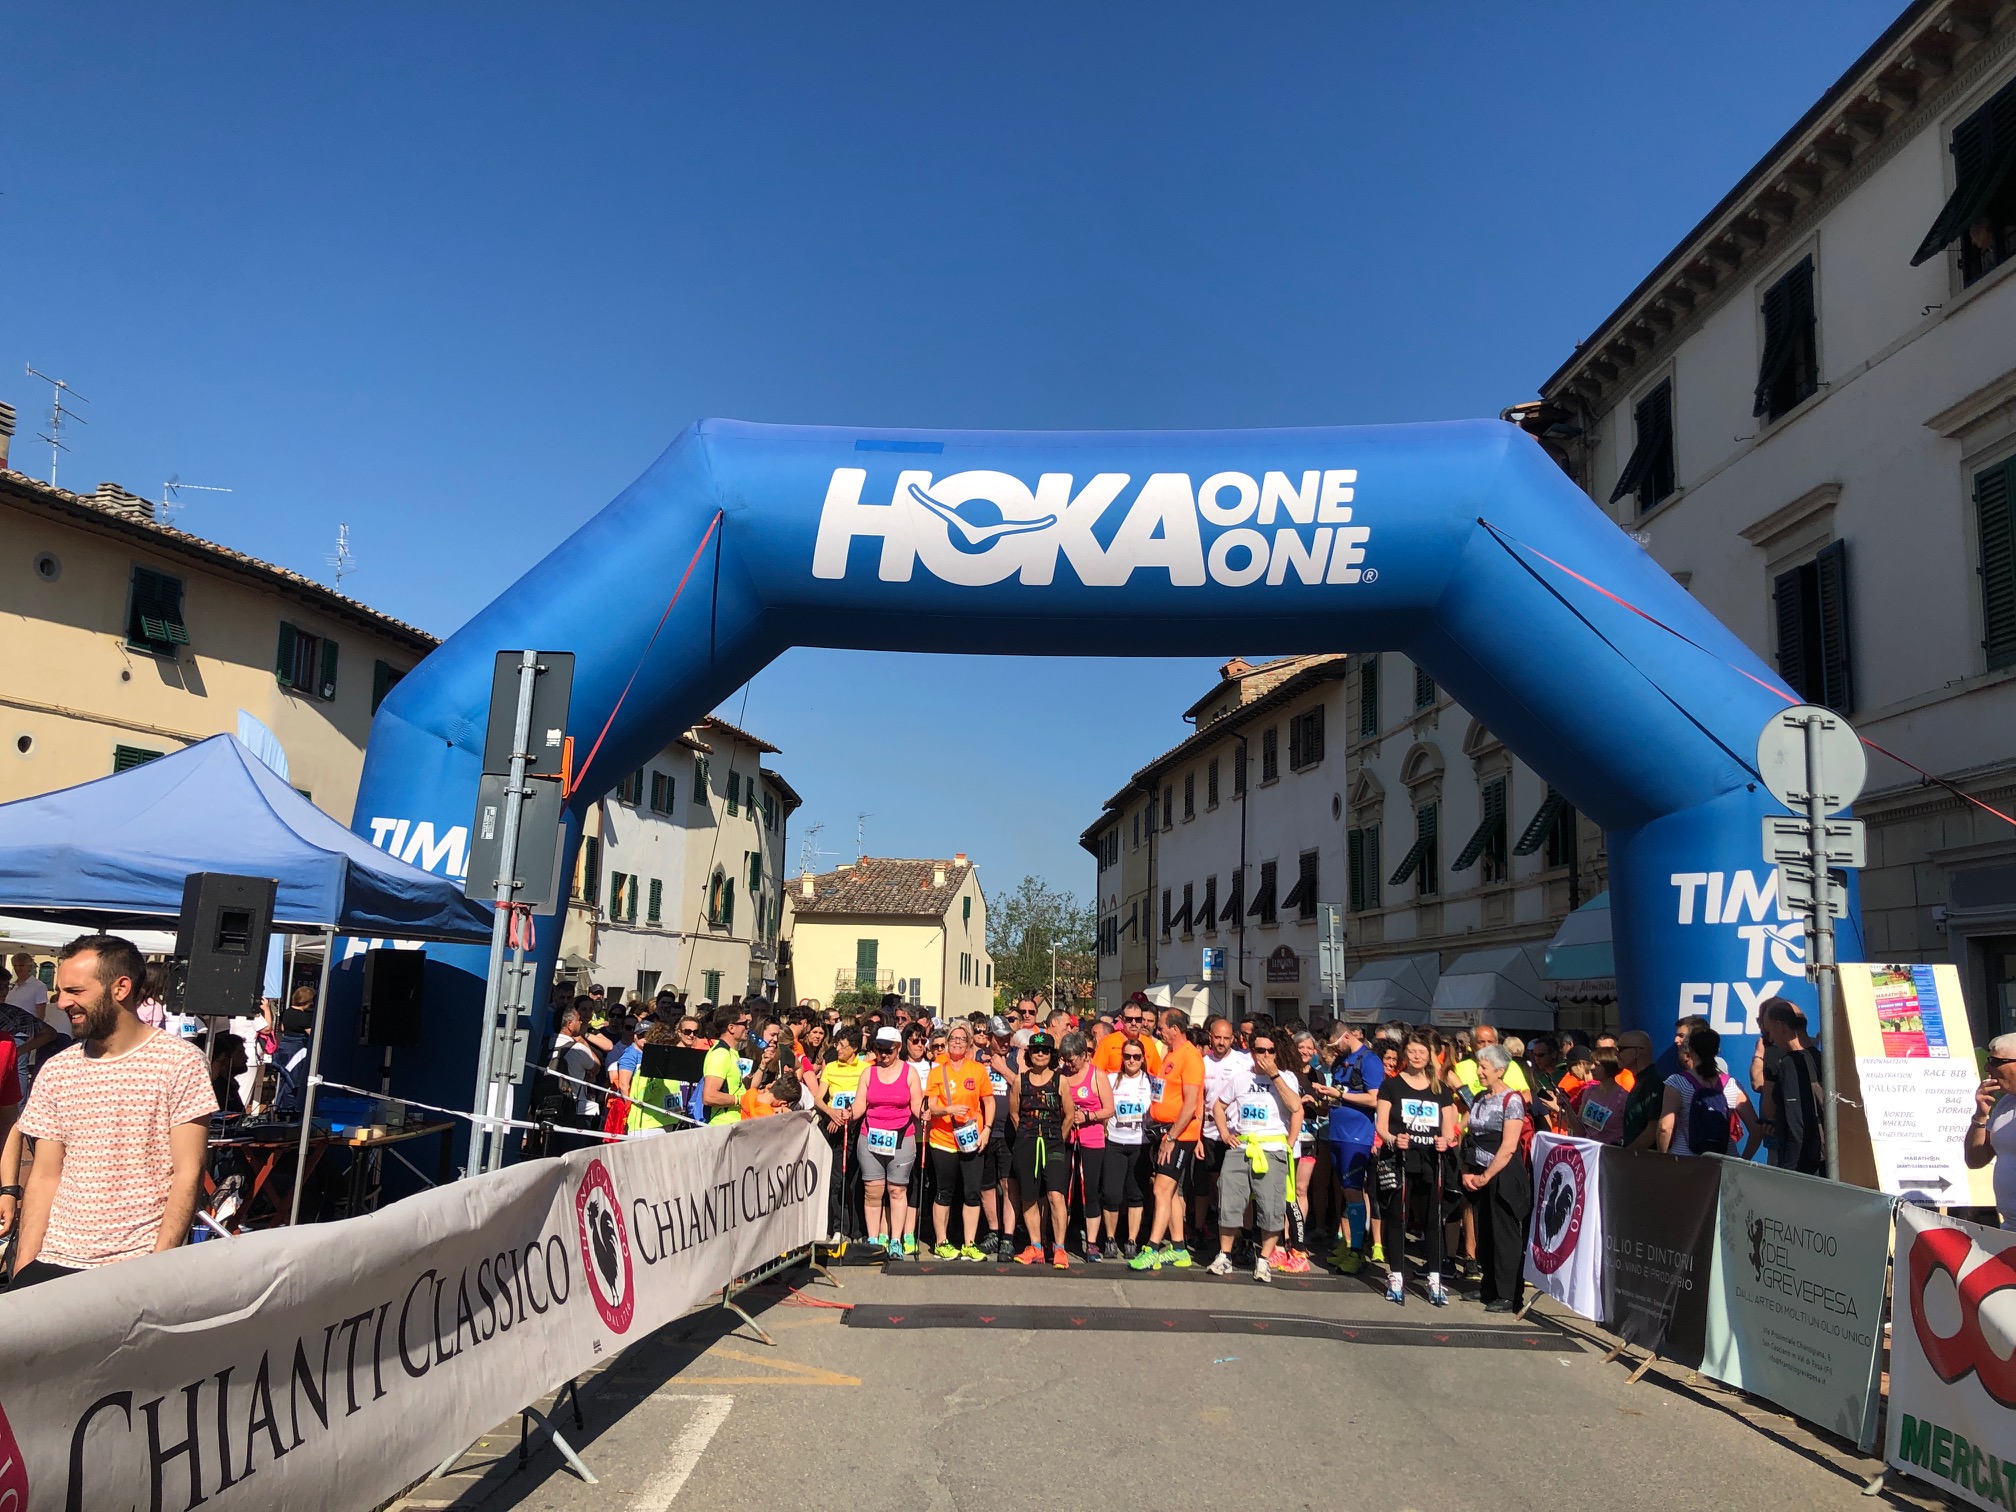 Chianti Classico Marathon 2019 a success! All the results